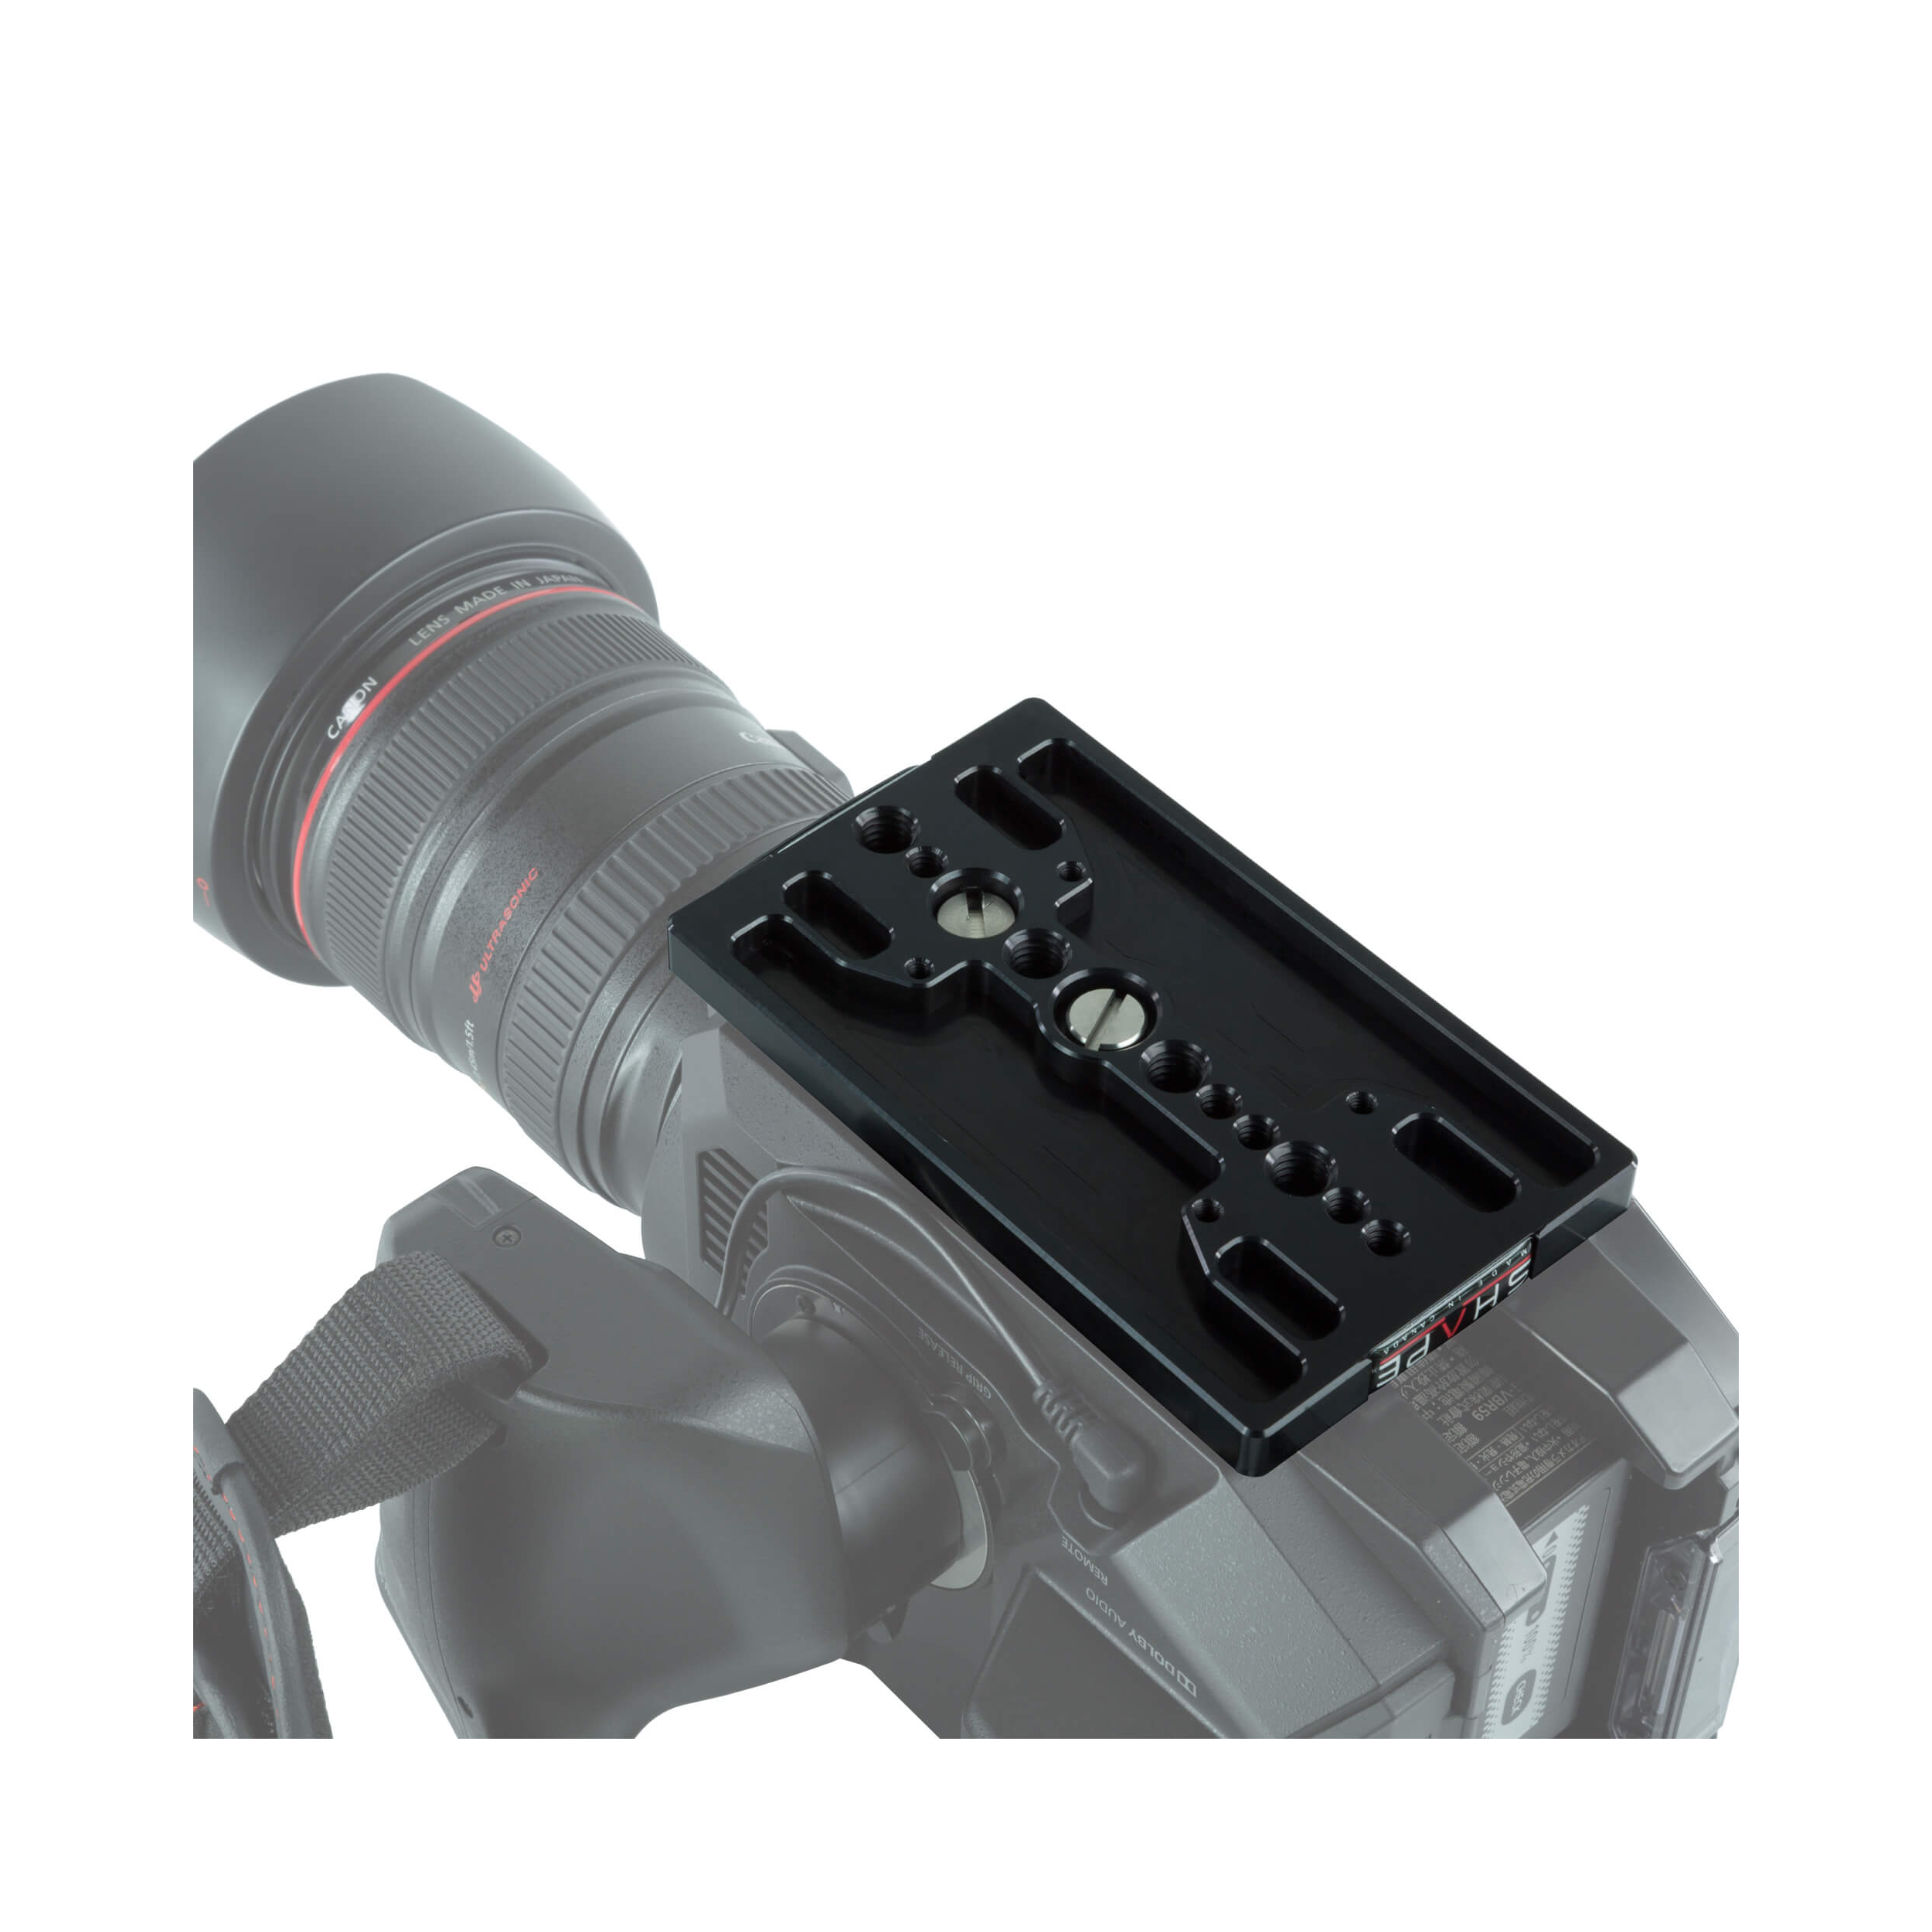 SHAPE Shoulder Rig Bundle with Follow Focus & Matte Box for Panasonic AU-EVA1